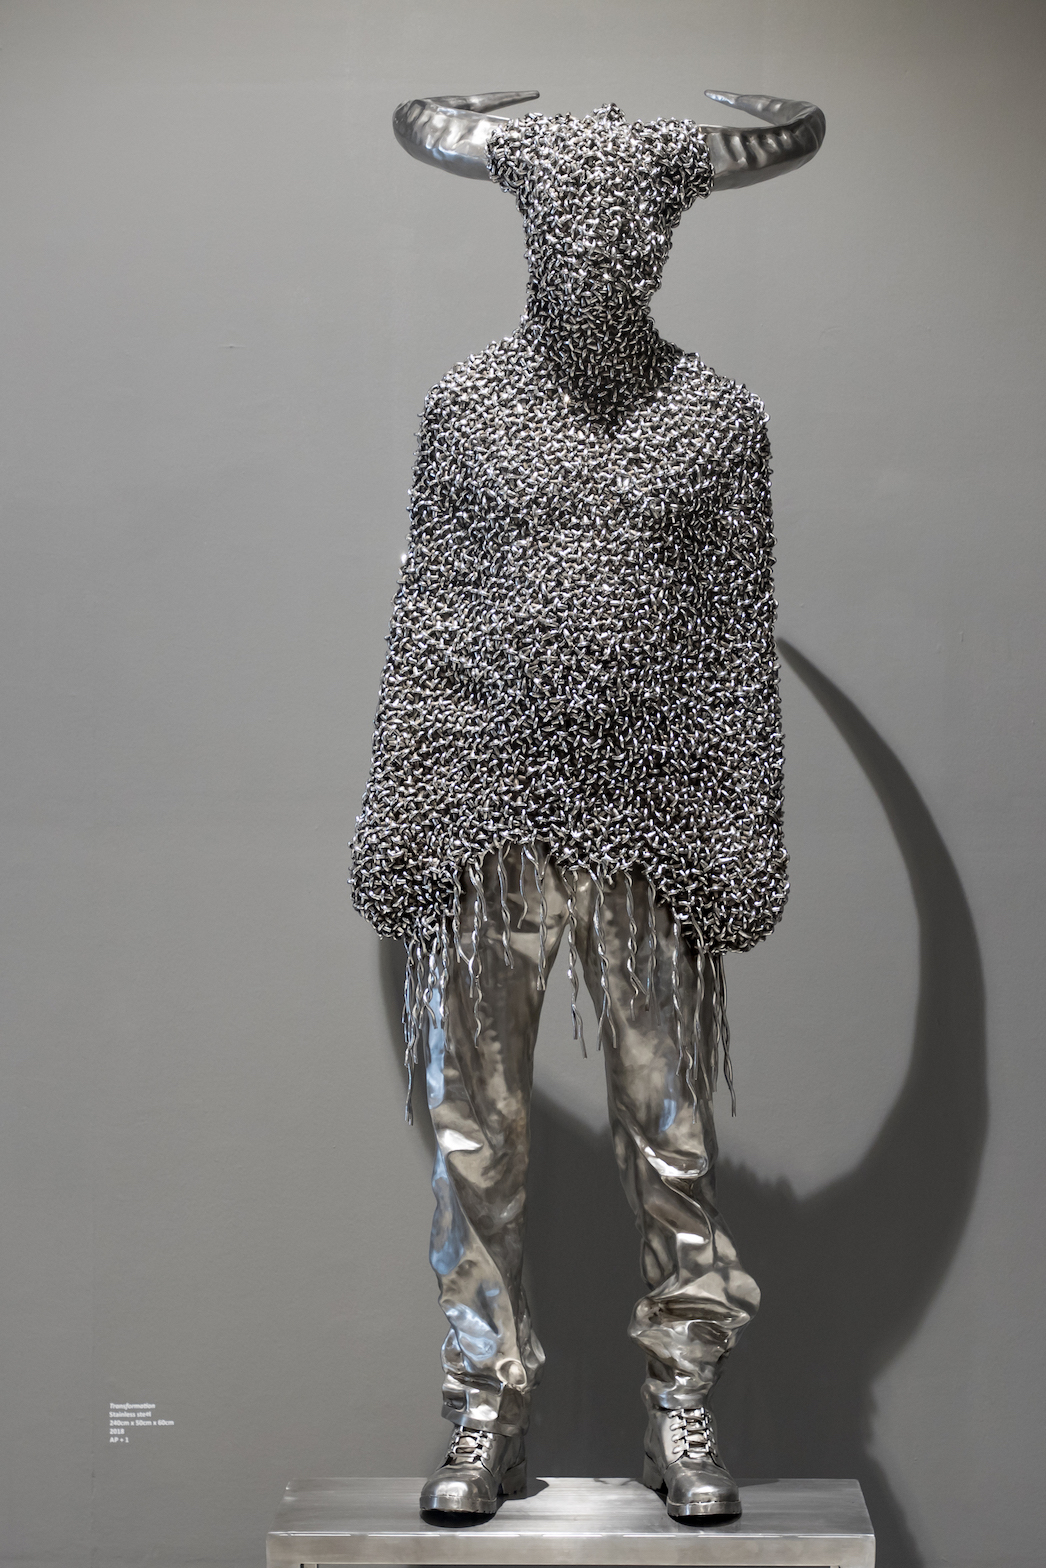 Mahbubur Rahman, sculpture stainless steel